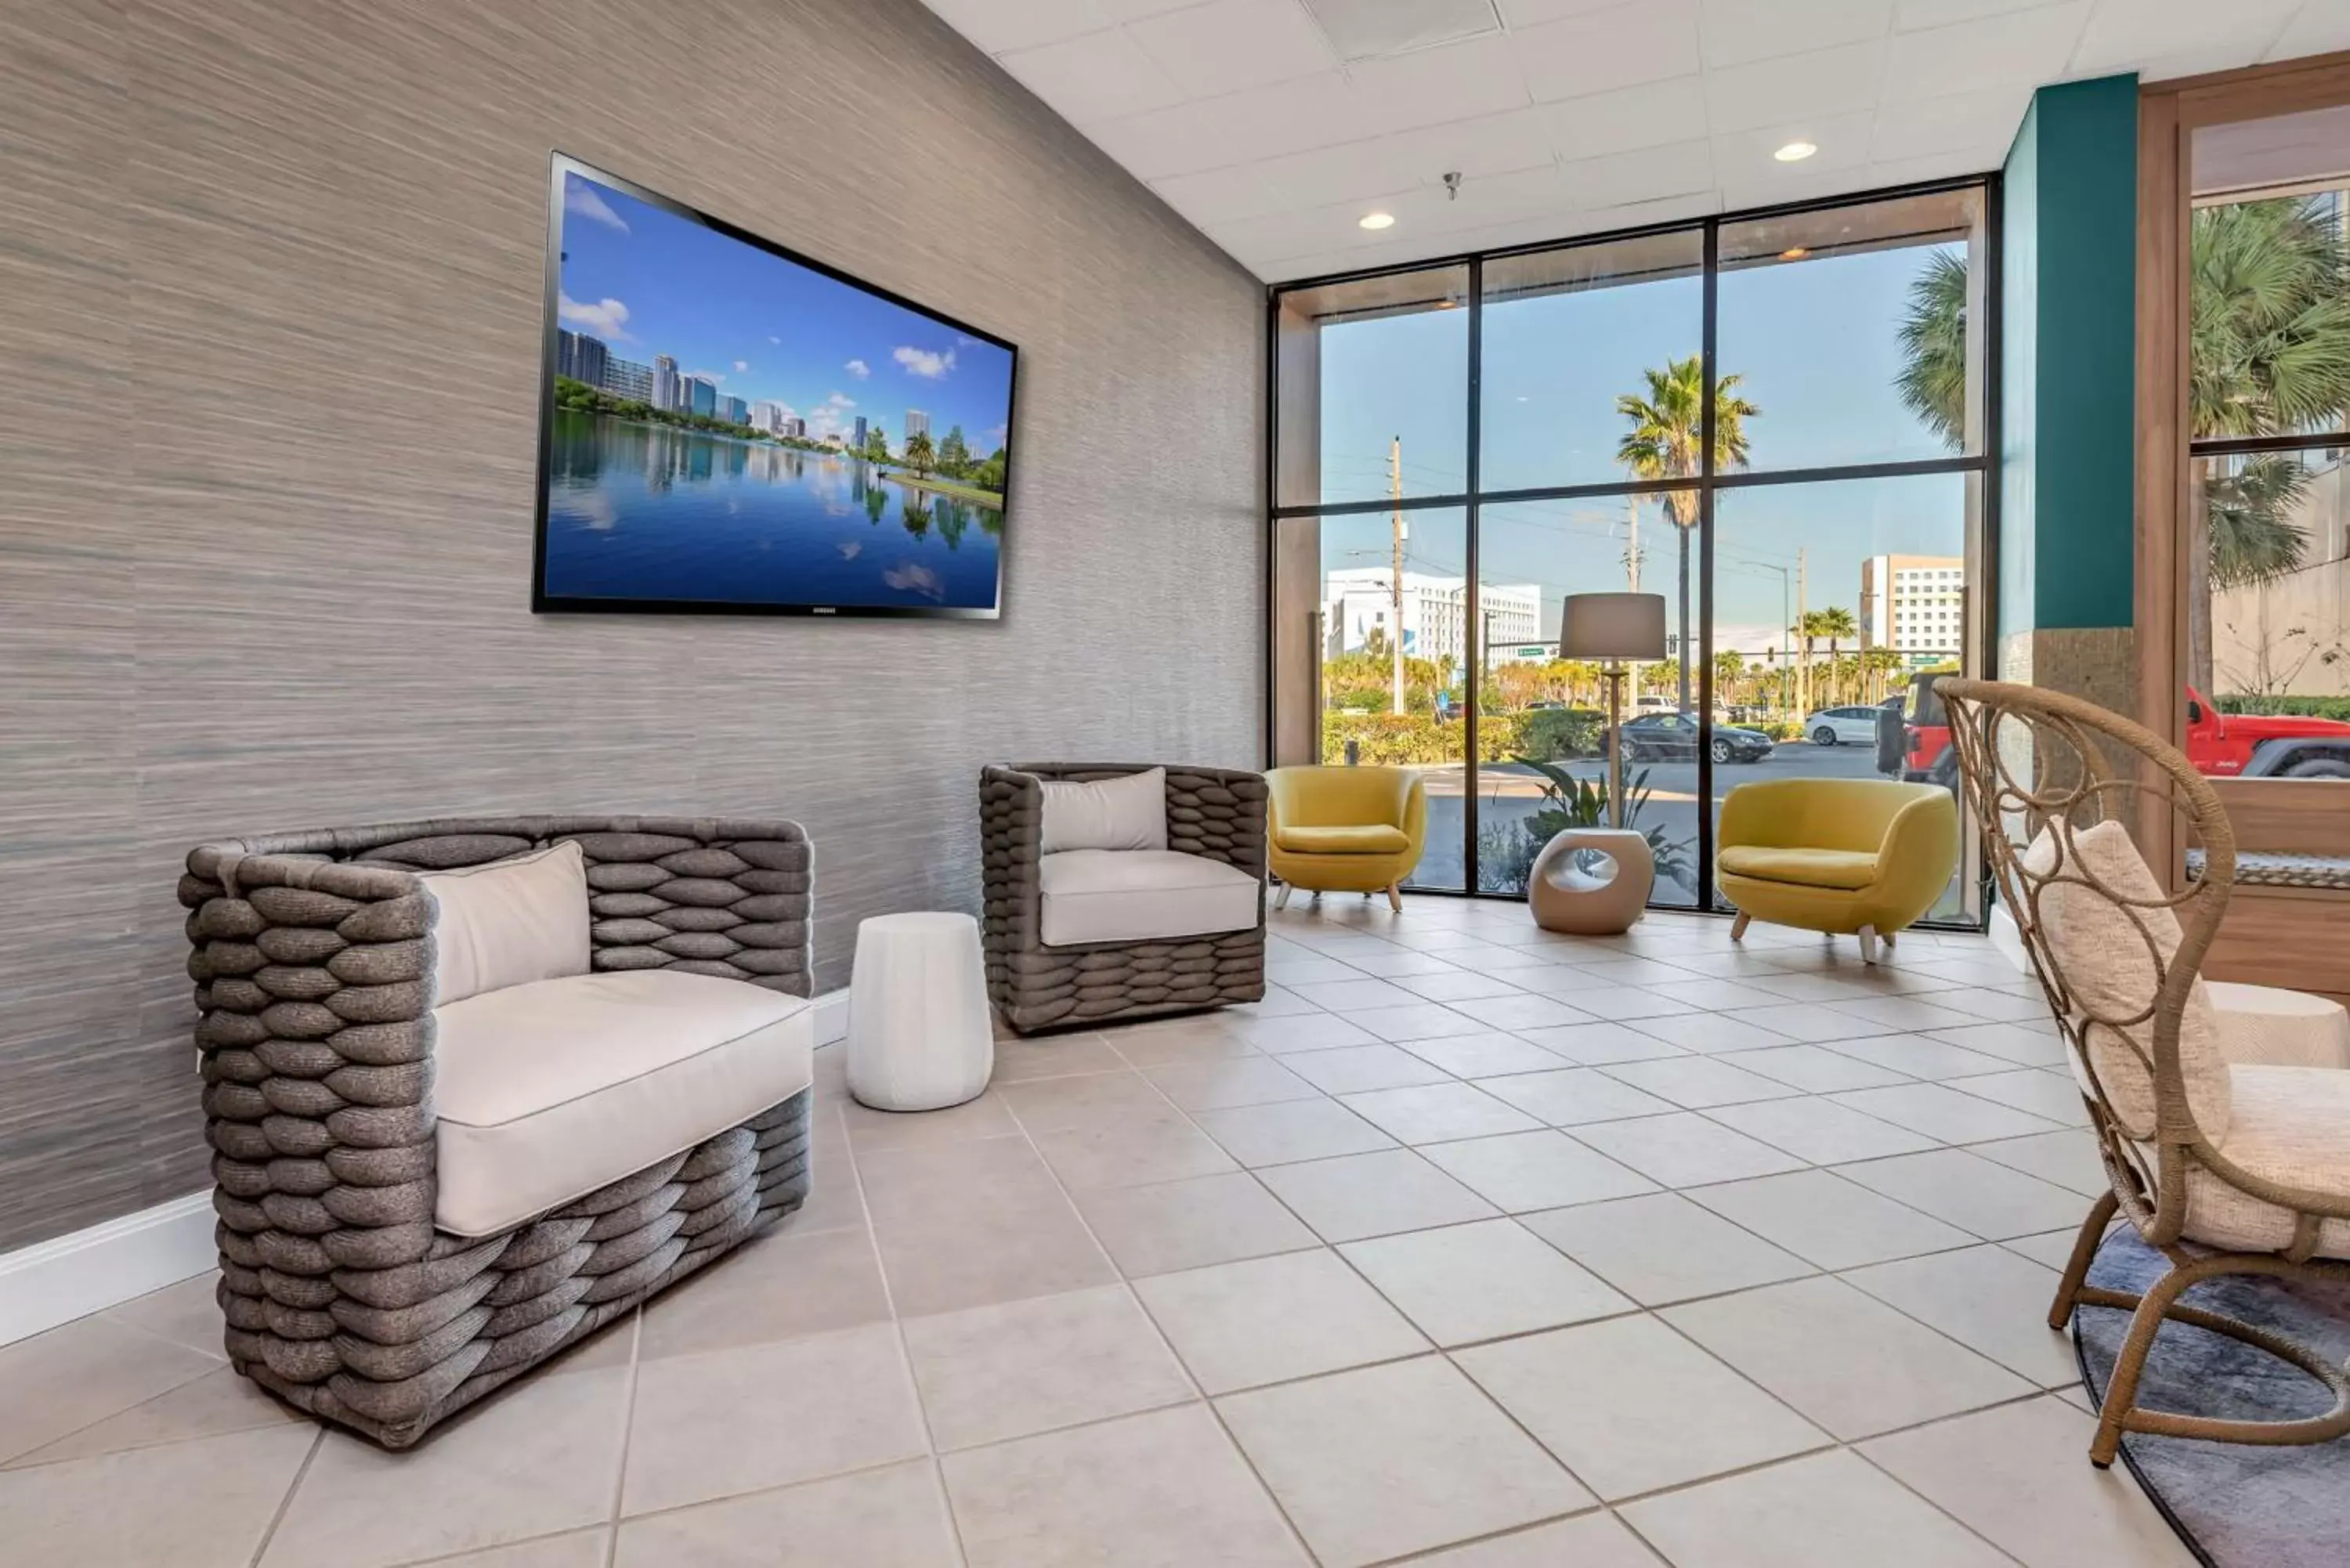 Lobby or reception in Best Western Orlando Gateway Hotel